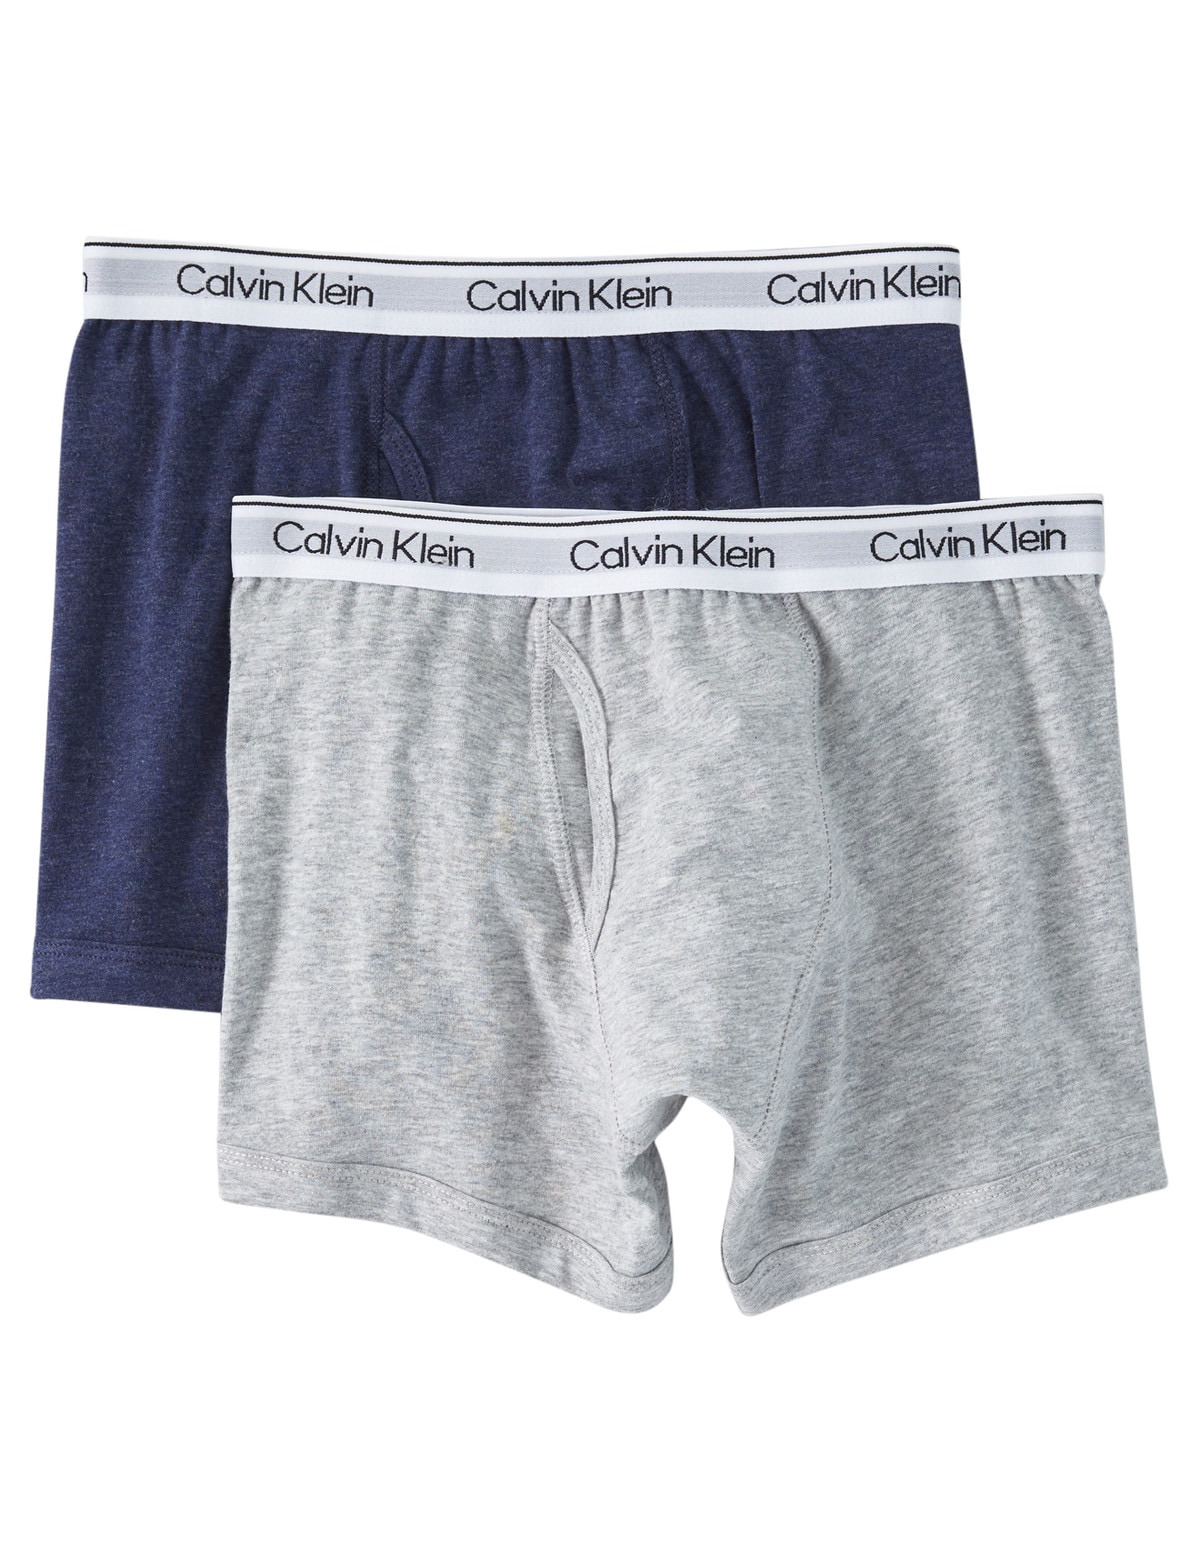 BRAND NEW Girls underwear (Calvin Klein) 6-7 years , Babies & Kids